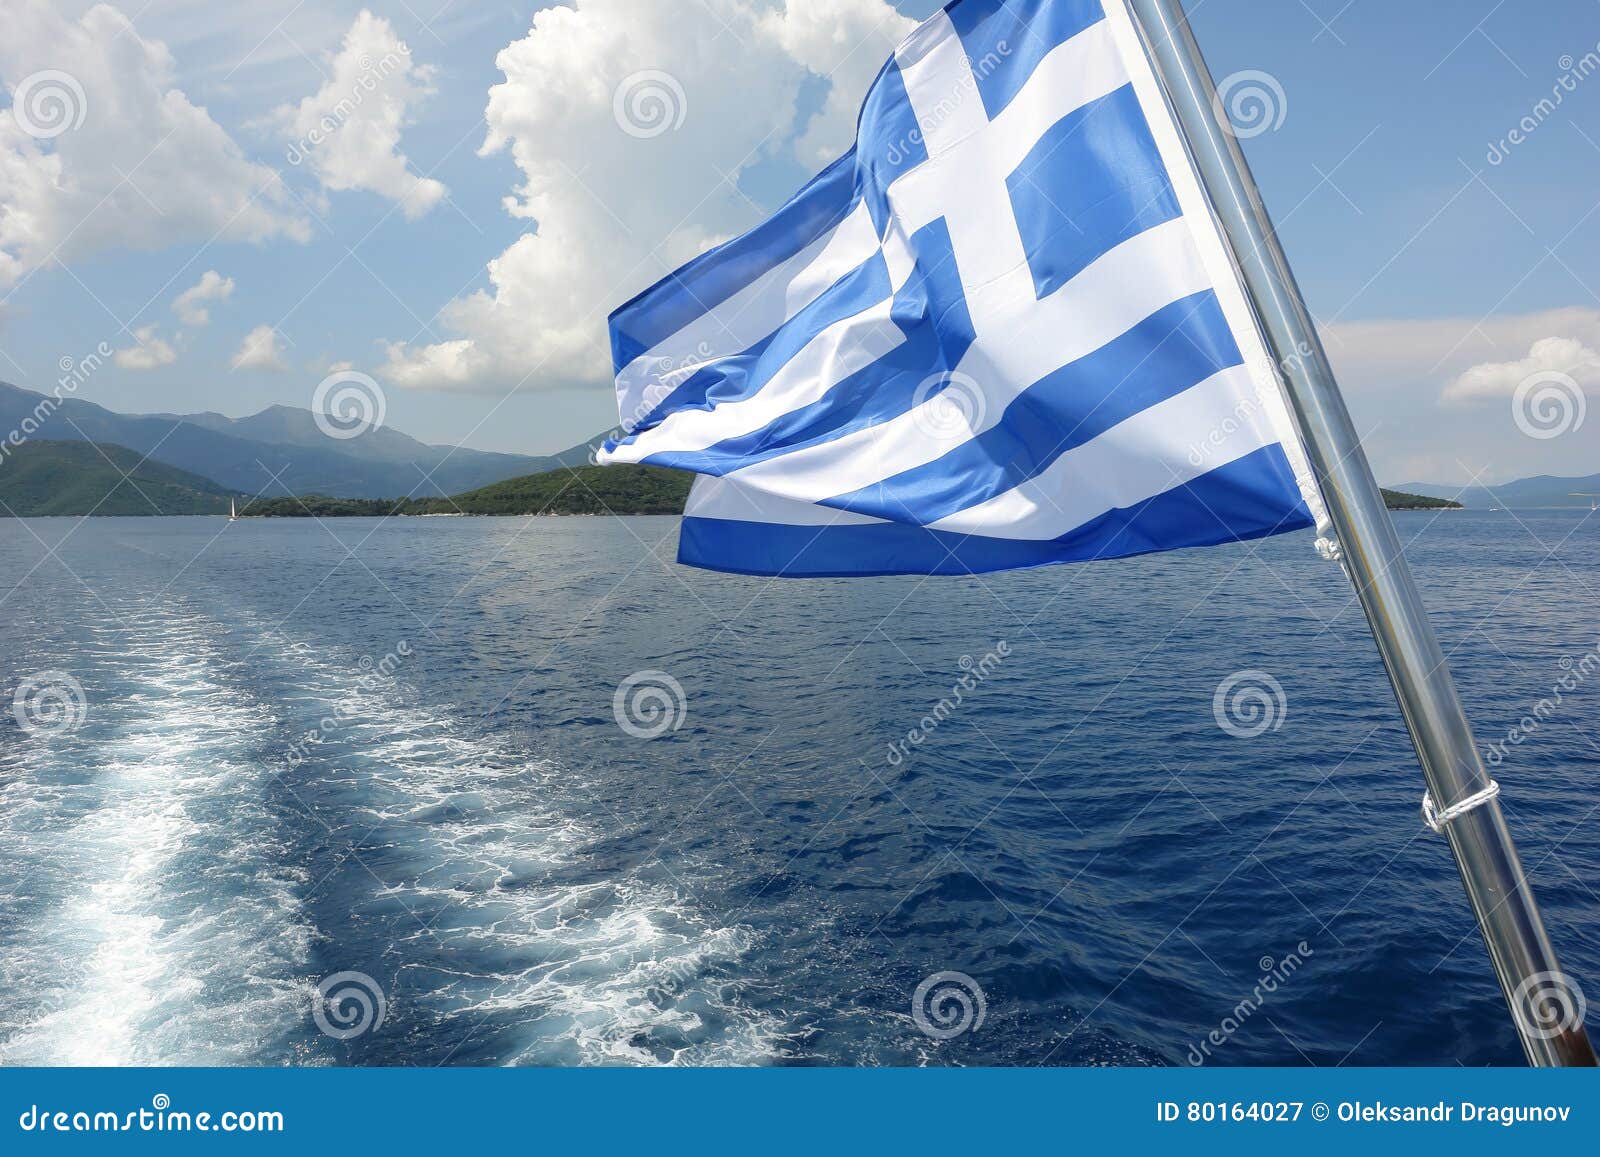 https://thumbs.dreamstime.com/z/griechische-flagge-und-blaues-meer-80164027.jpg